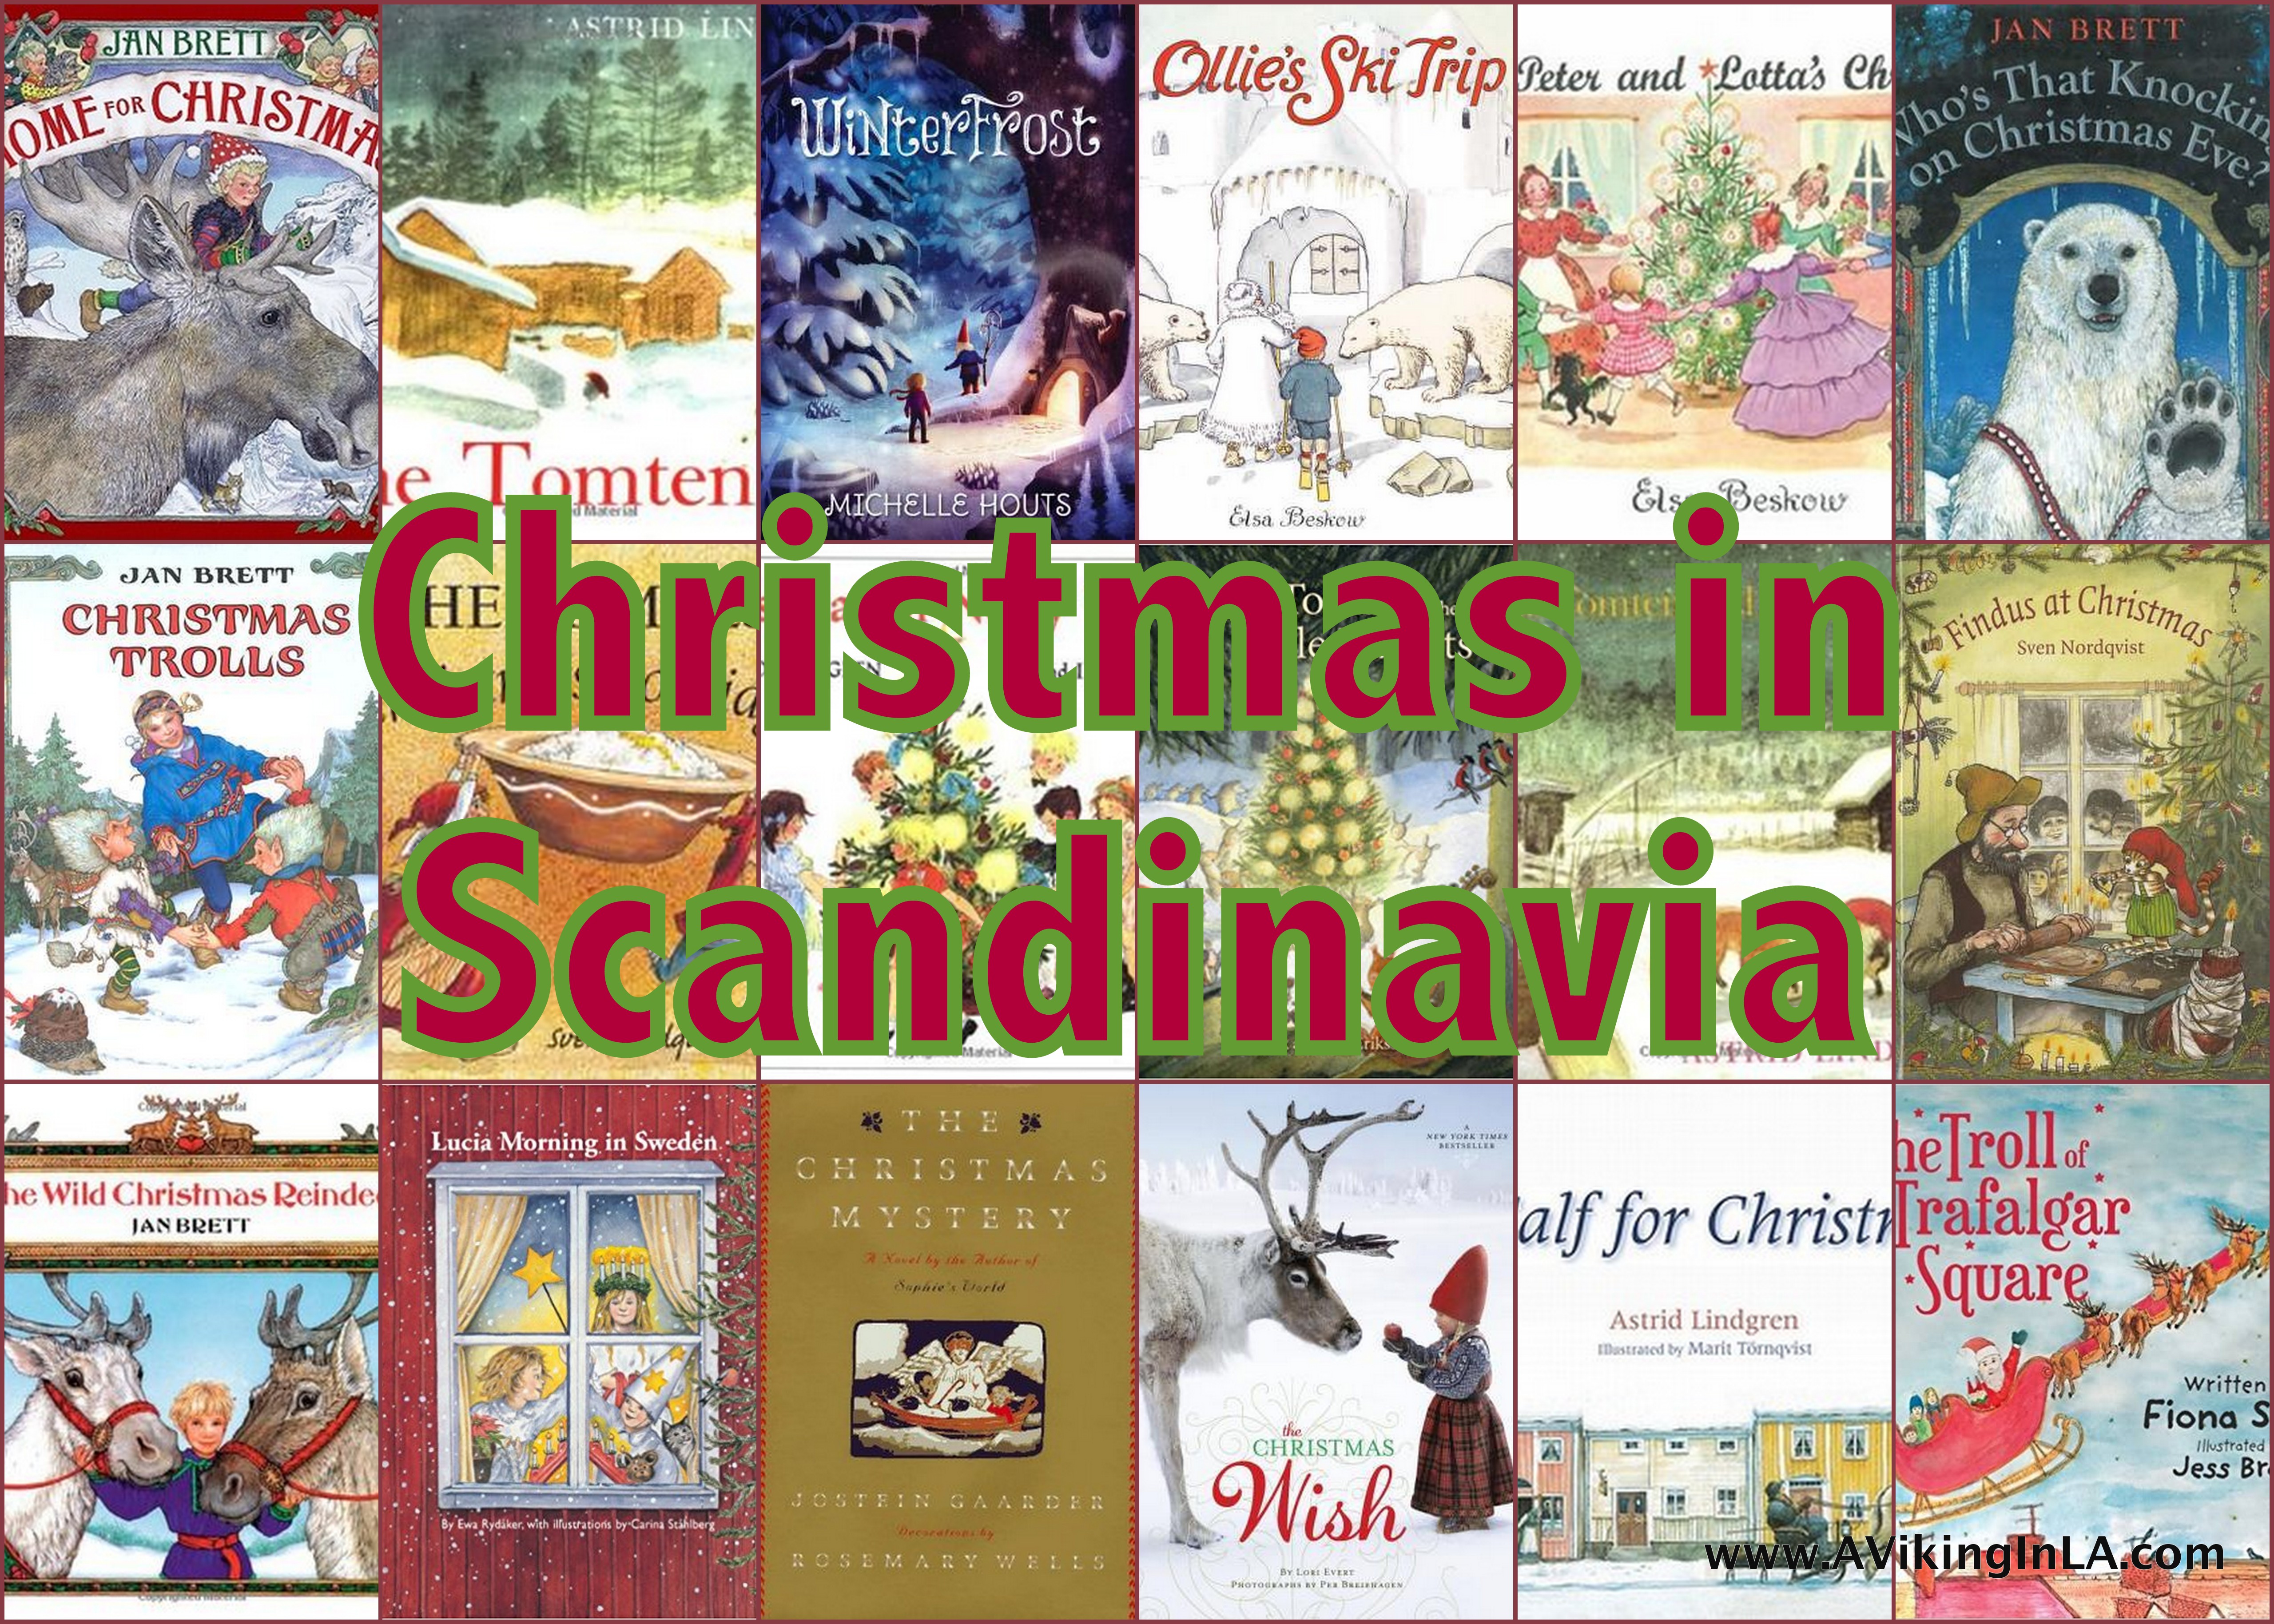 Christmas in Scandinavia » A Viking in LAA Viking in LA